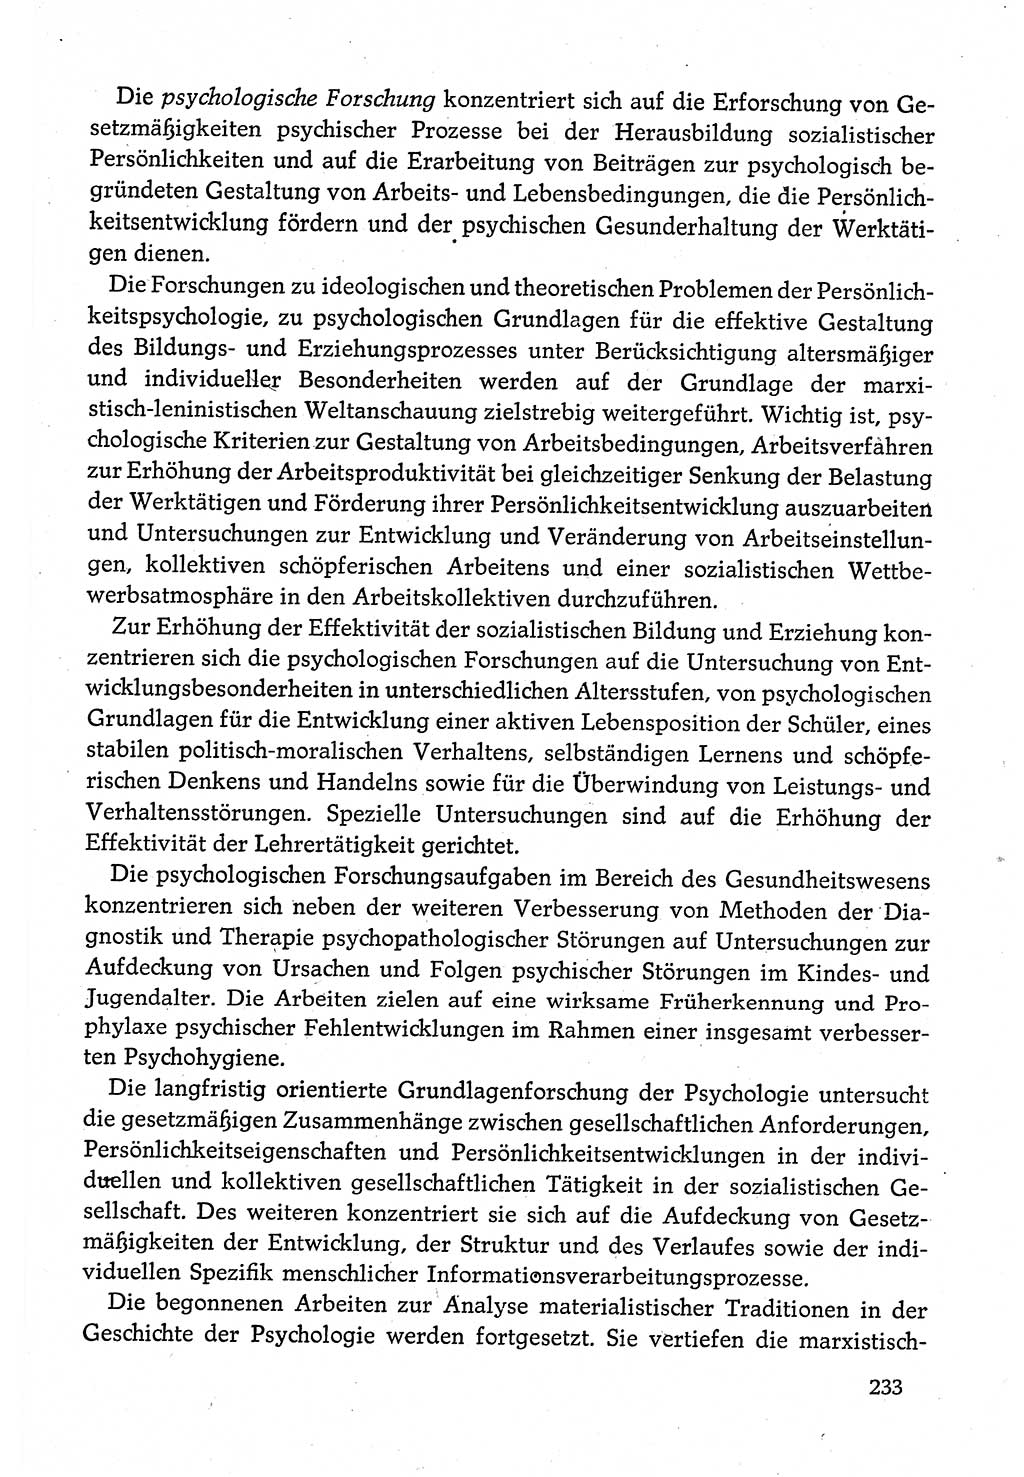 Dokumente der Sozialistischen Einheitspartei Deutschlands (SED) [Deutsche Demokratische Republik (DDR)] 1980-1981, Seite 233 (Dok. SED DDR 1980-1981, S. 233)